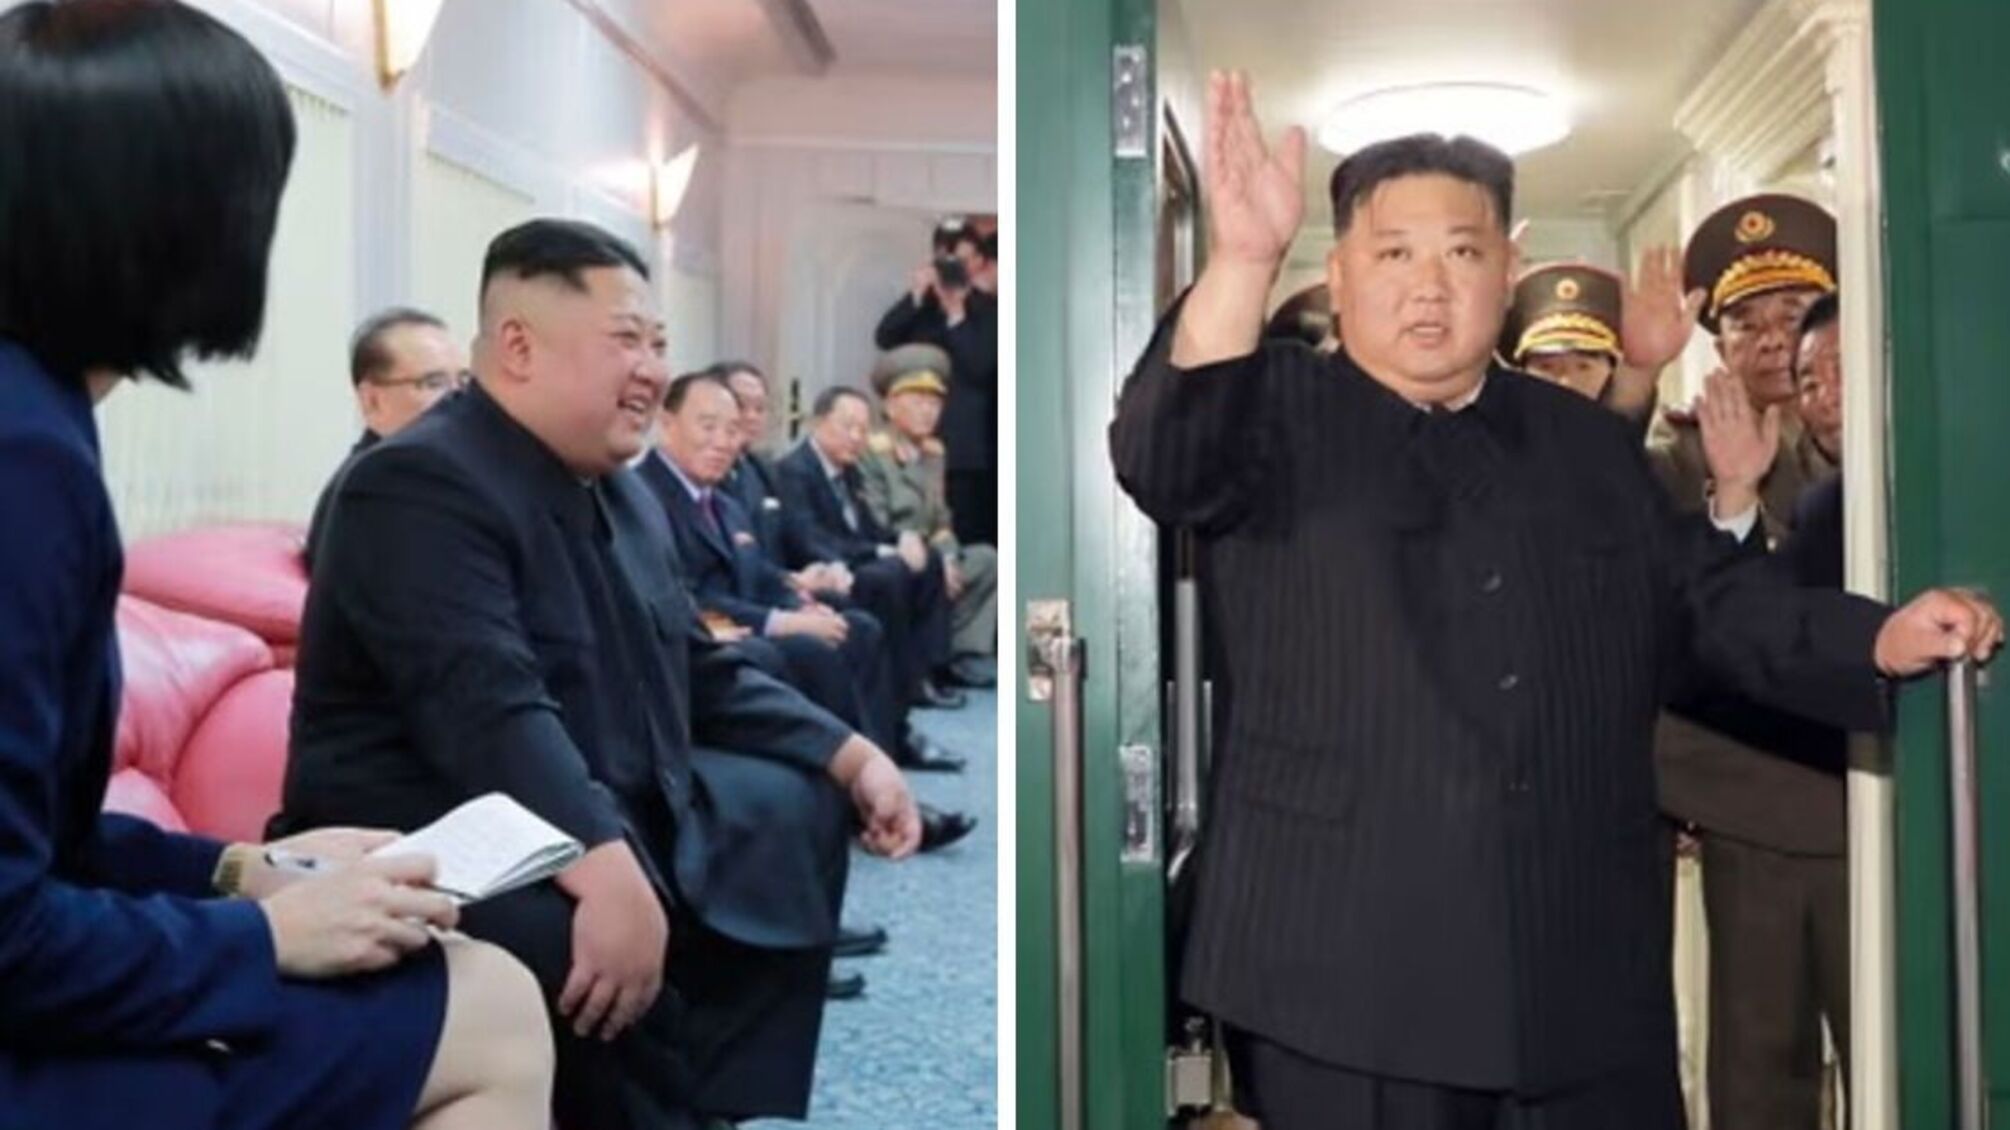 Ким Чен Ын прибыл во Владивосток для встречи с путиным на бронепоезде с розовыми сиденьями